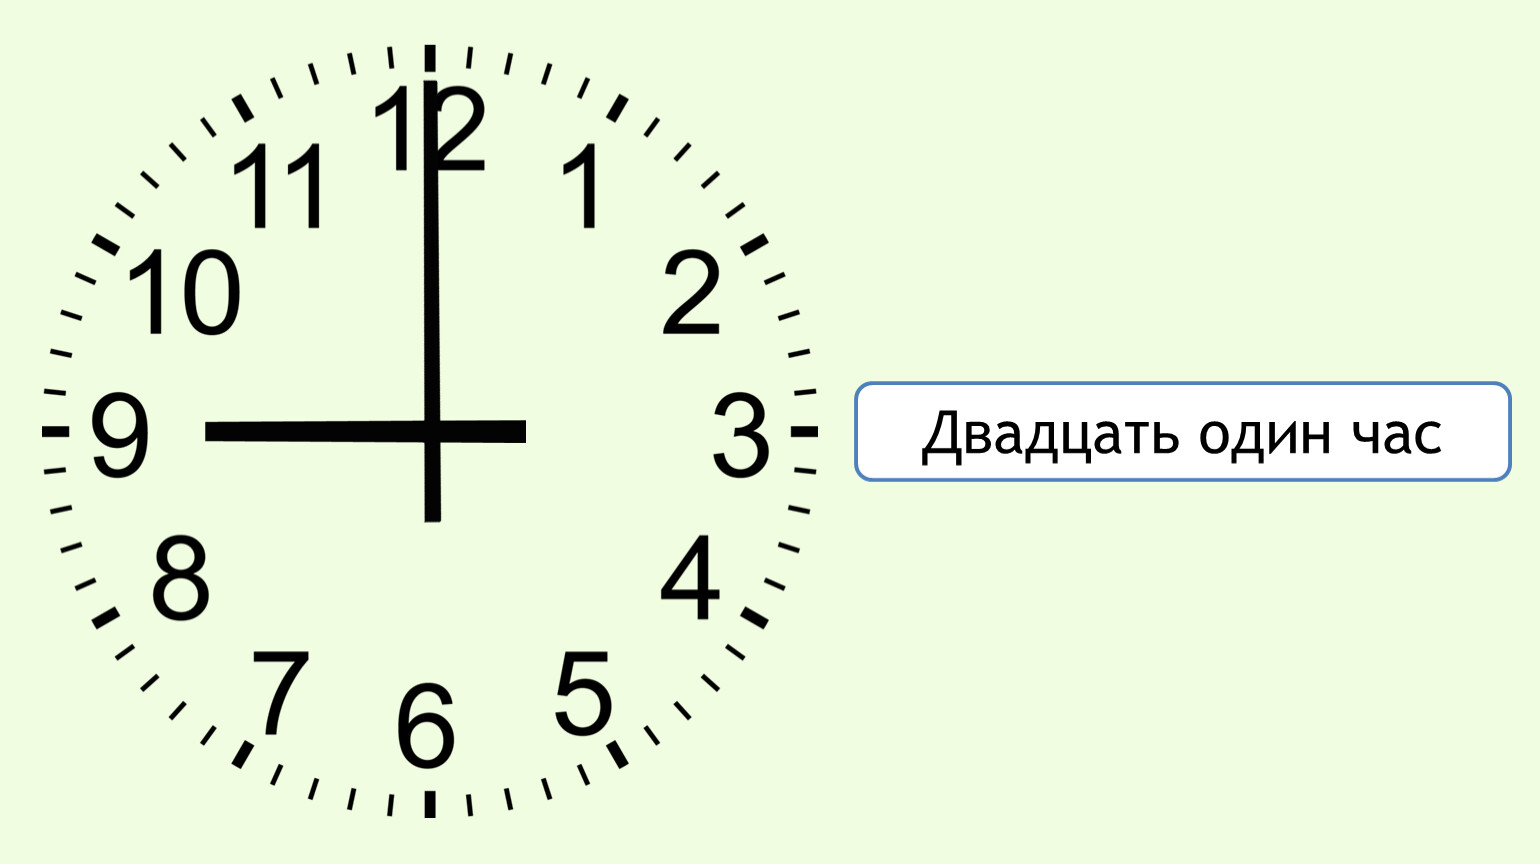 15 45 1 5 часа. Часы показывают час. Время циферблат. Циферблат 9 часов. Циферблат часов с минутами.